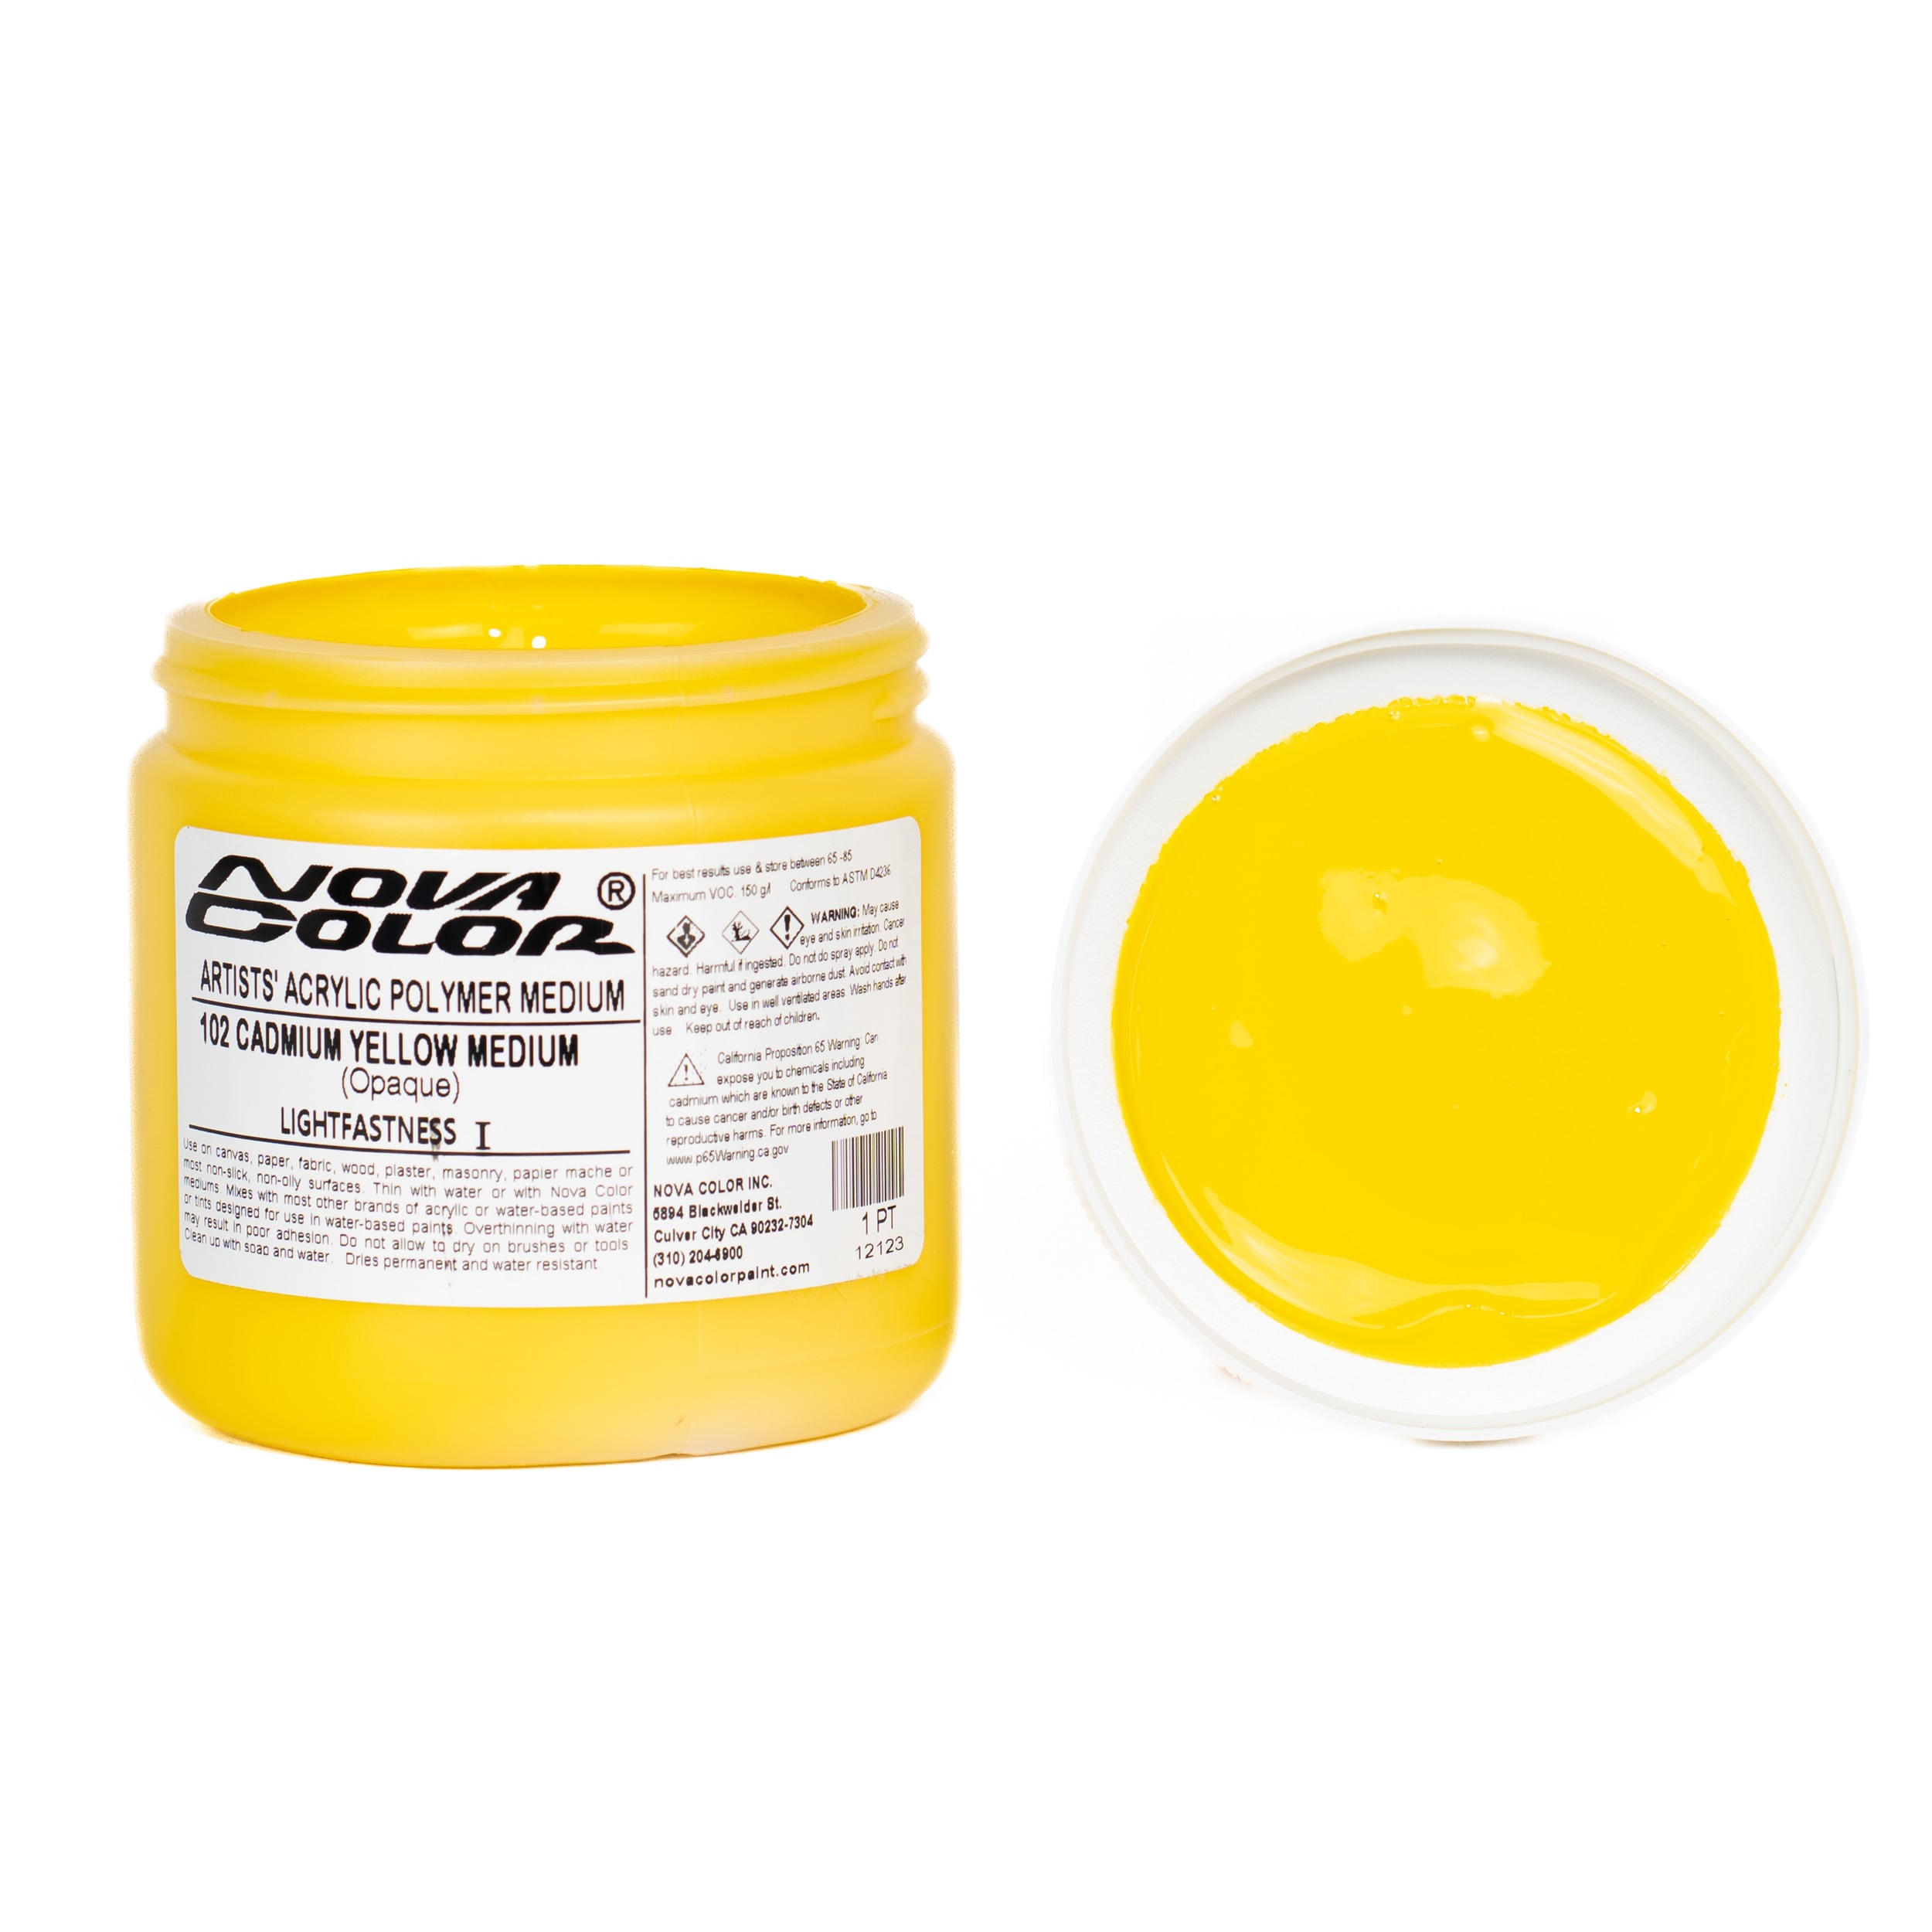 Buy #102 Cadmium Yellow Medium - Lightfastness:, ** - Opaque Online